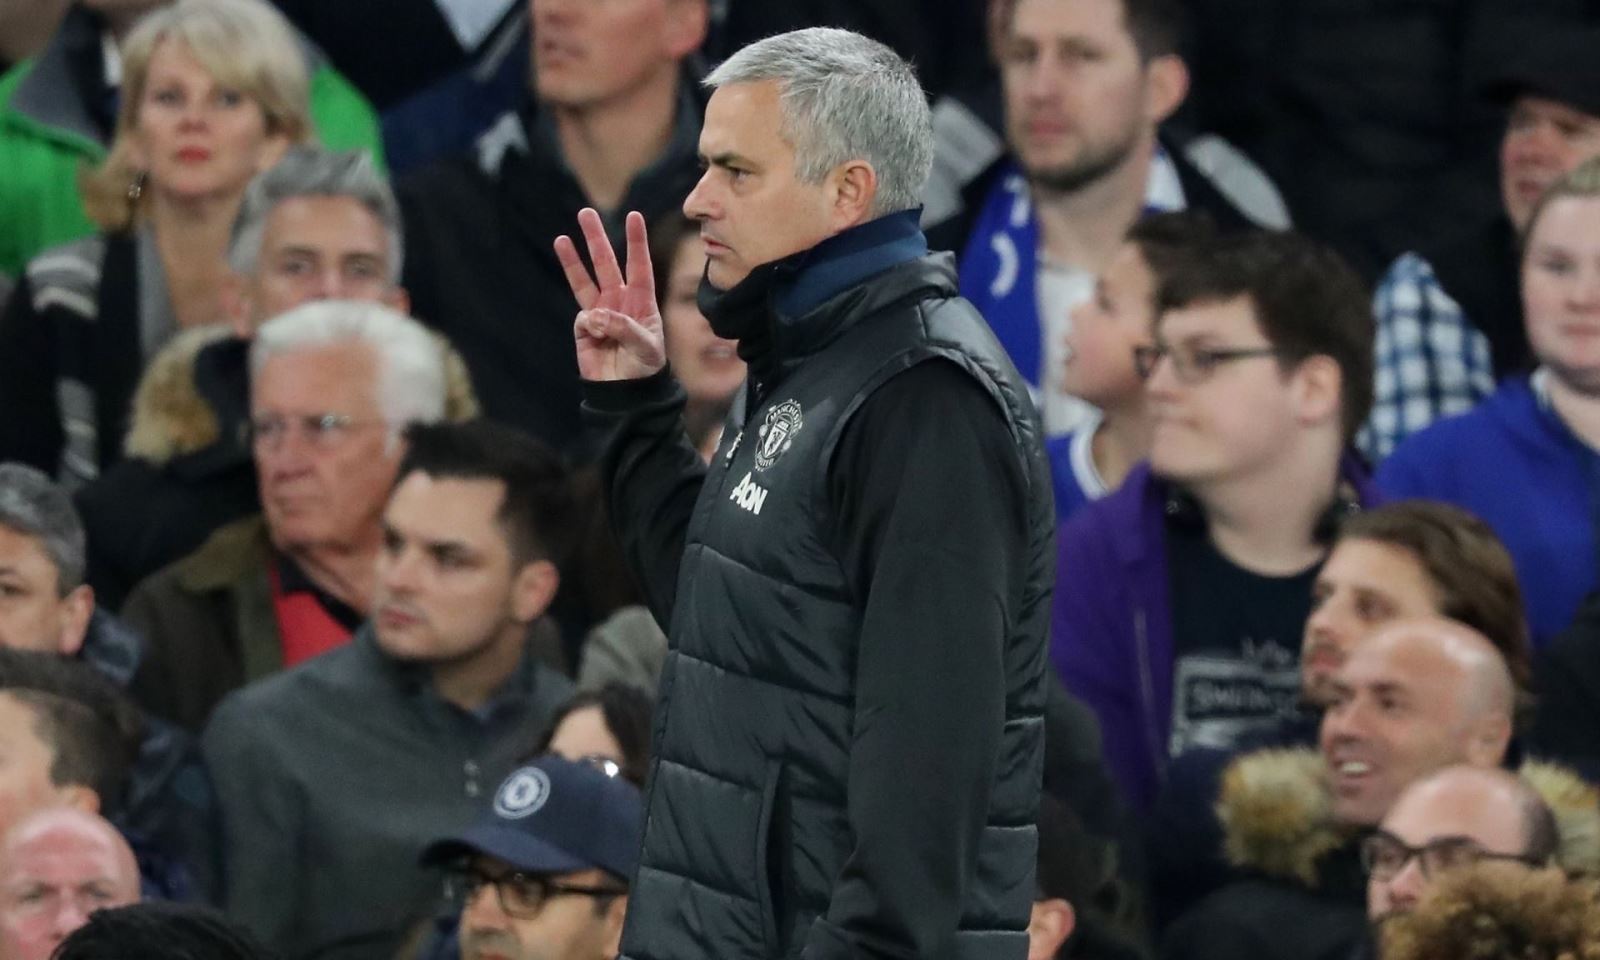 Mourinho tiếp tục giơ 3 ngón tay lên sau khi bị CĐV Chelsea chửi rủa